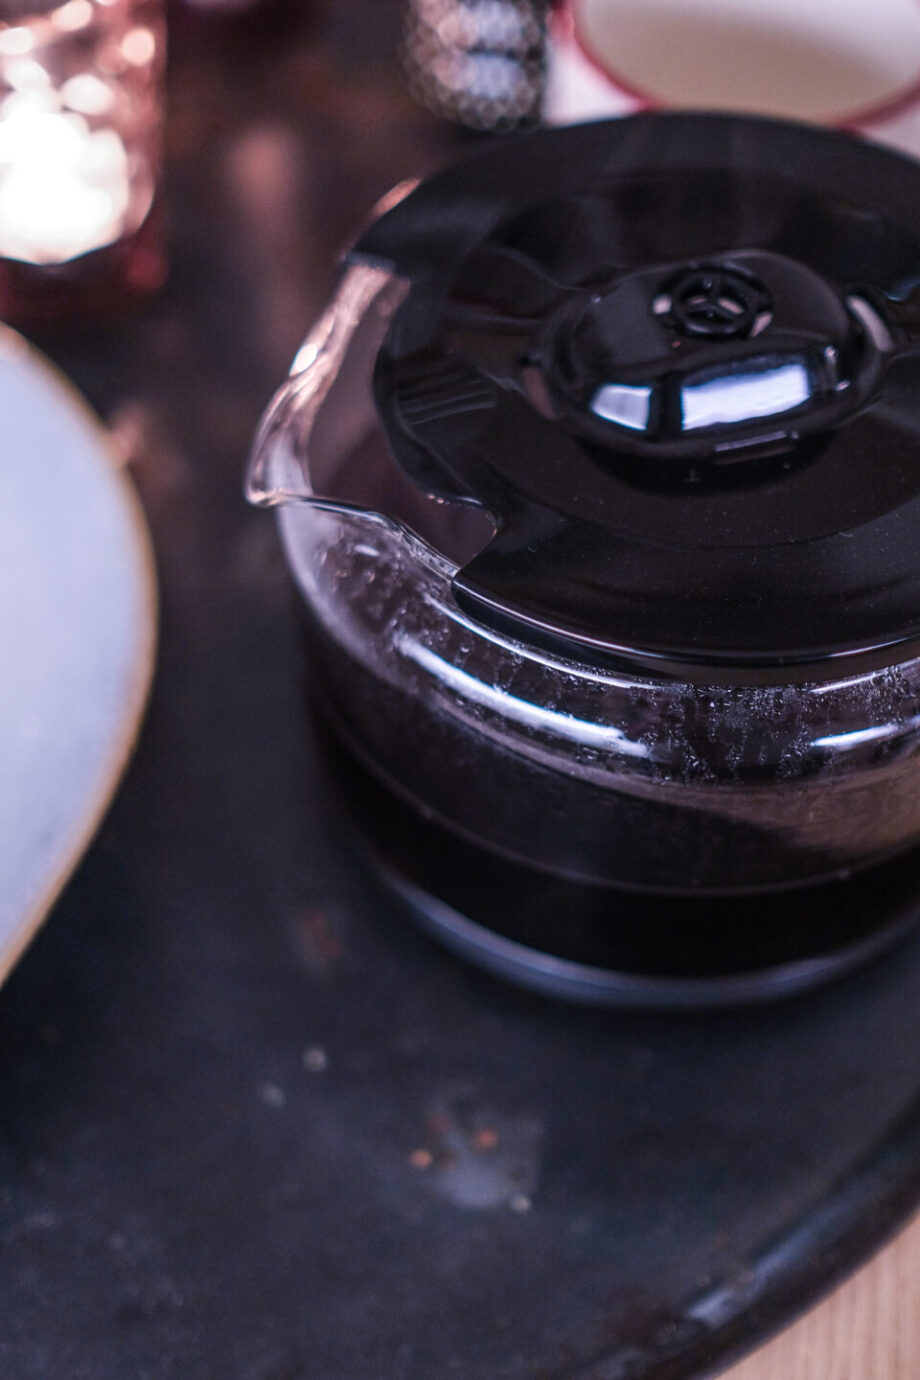 Gebackene Apfelringe mit Zimtzucker und Kaffeepause auf Knopfdruck... Krups Grind Aroma Kaffeemaschine